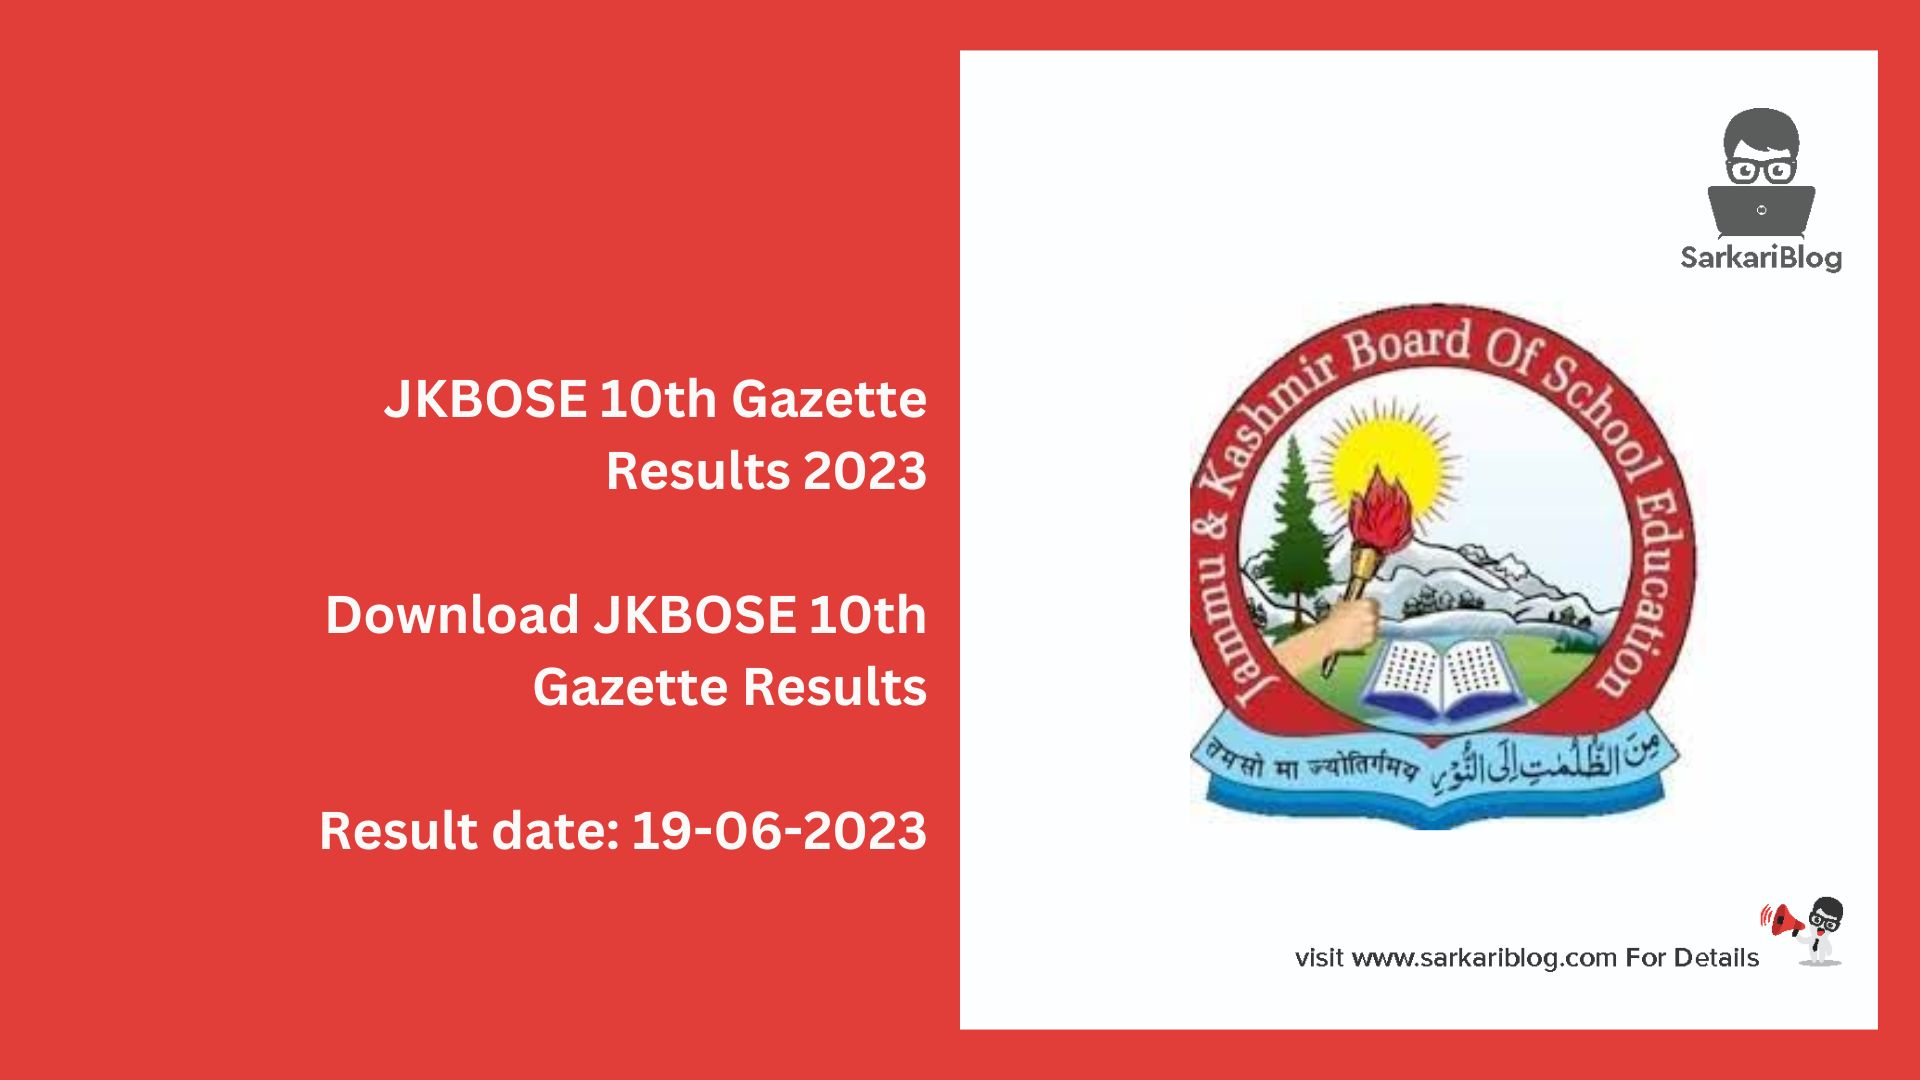 JKBOSE 10th Gazette Results 2023